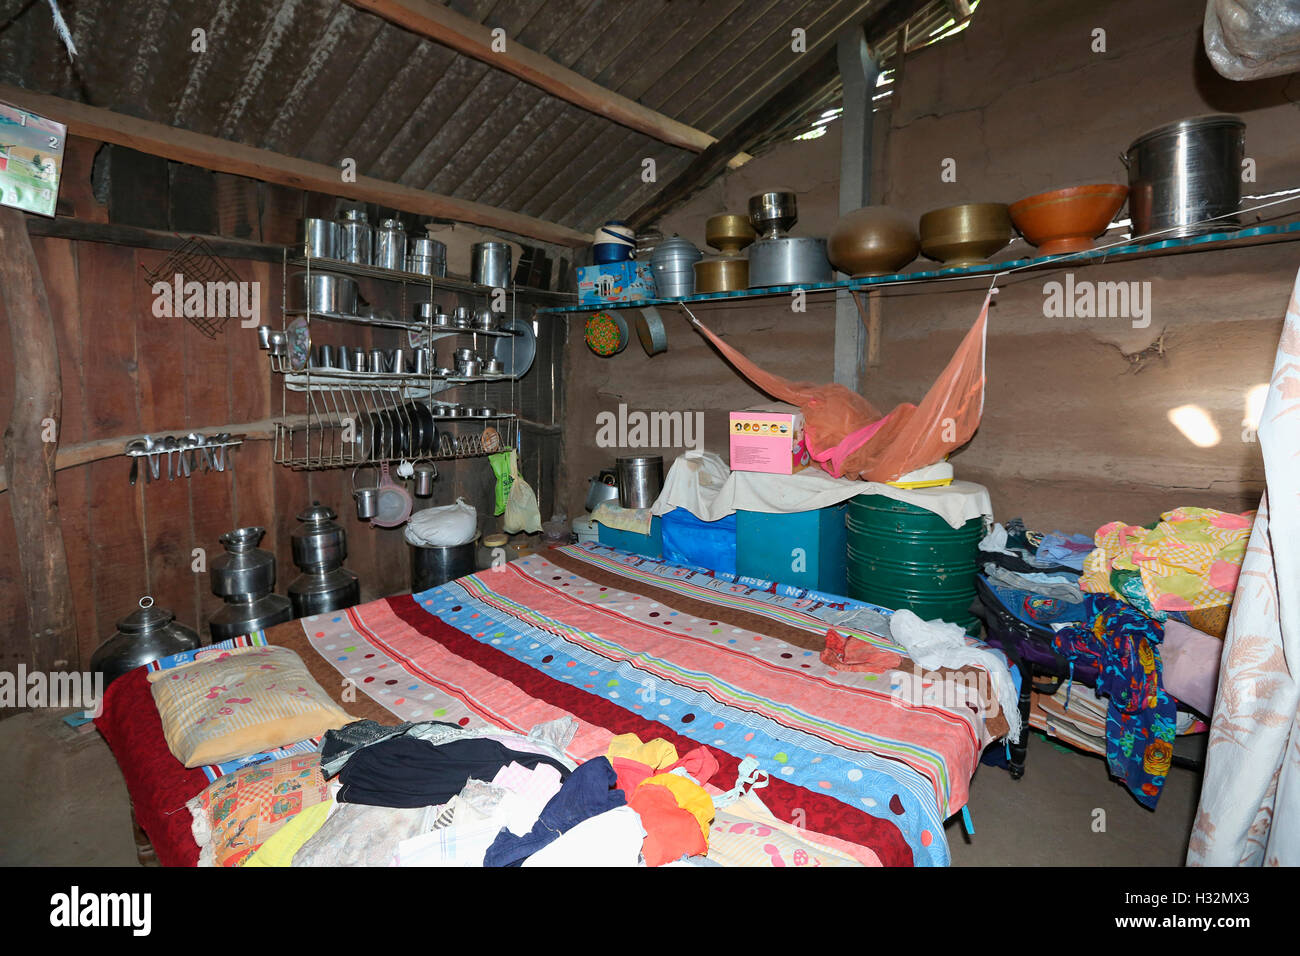 Tribal house interior, BARODIA TRIBE, Gujrat, India Stock Photo